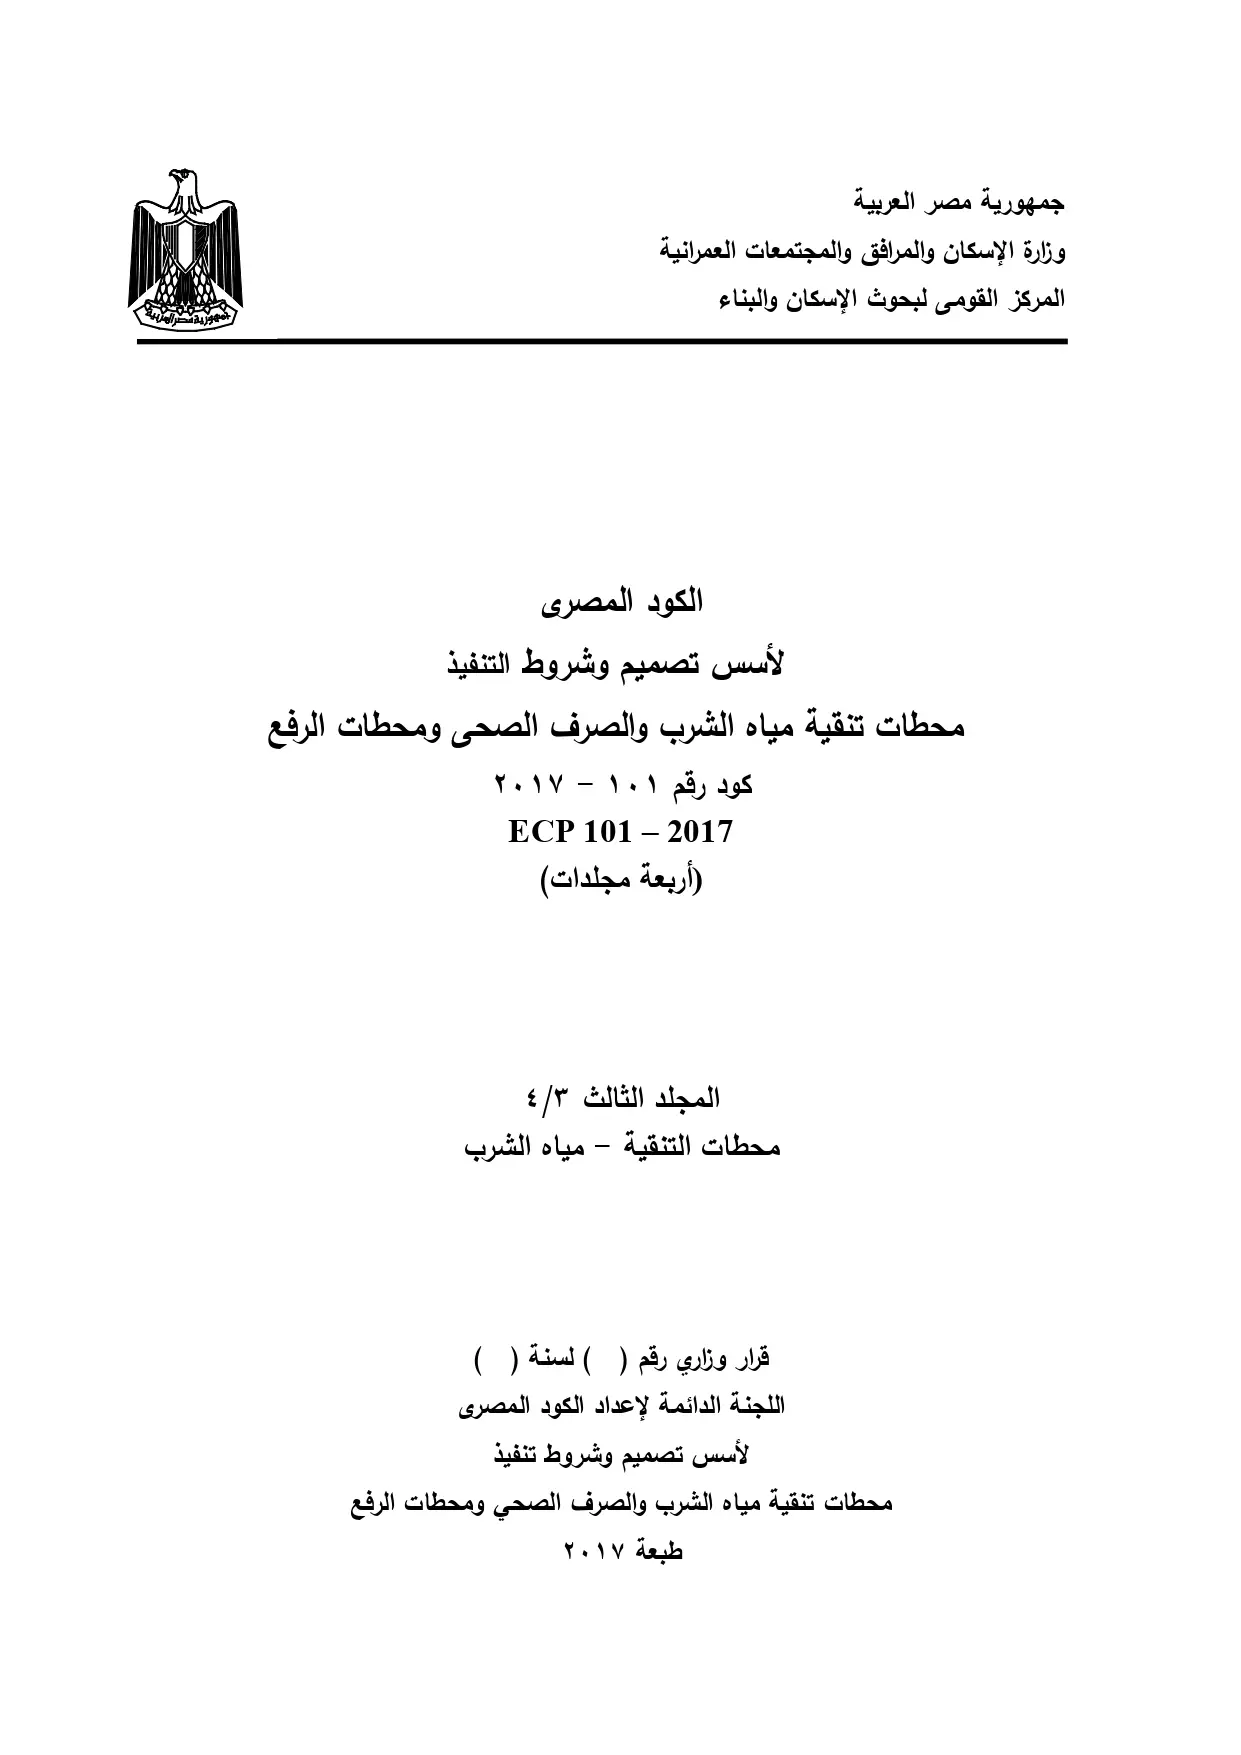 الكود المصرى المجلد الثالث محطات التنقیة - میاه الشرب ٢٠١٧ - كود رقم ١٠١